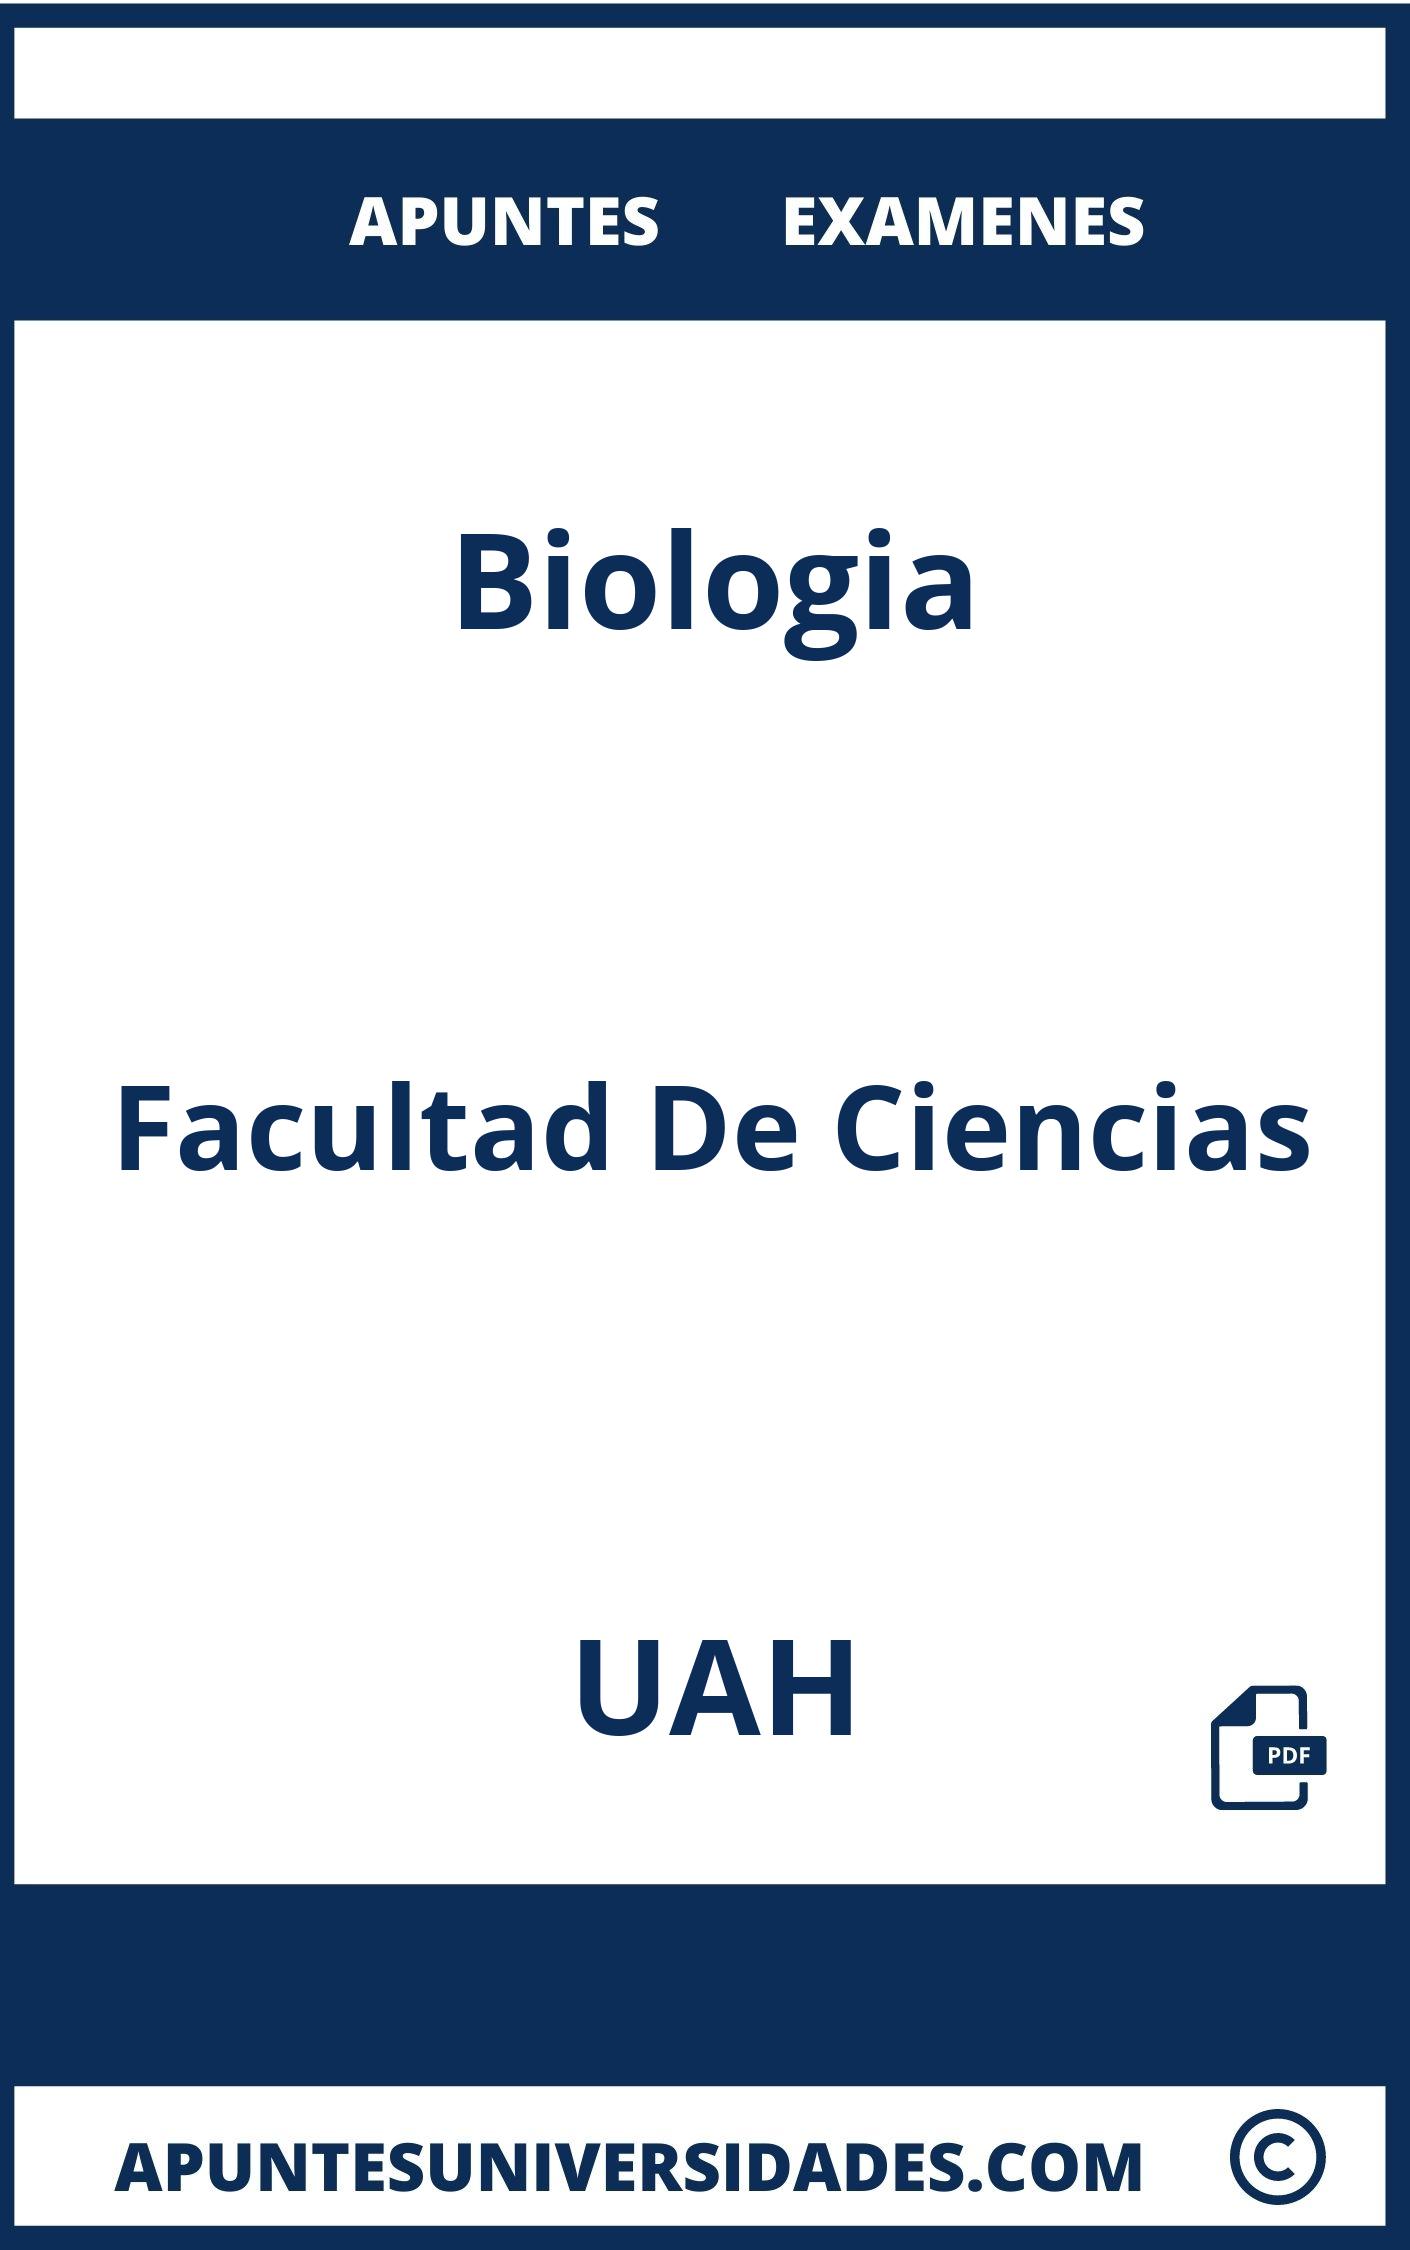 Biologia UAH Examenes Apuntes